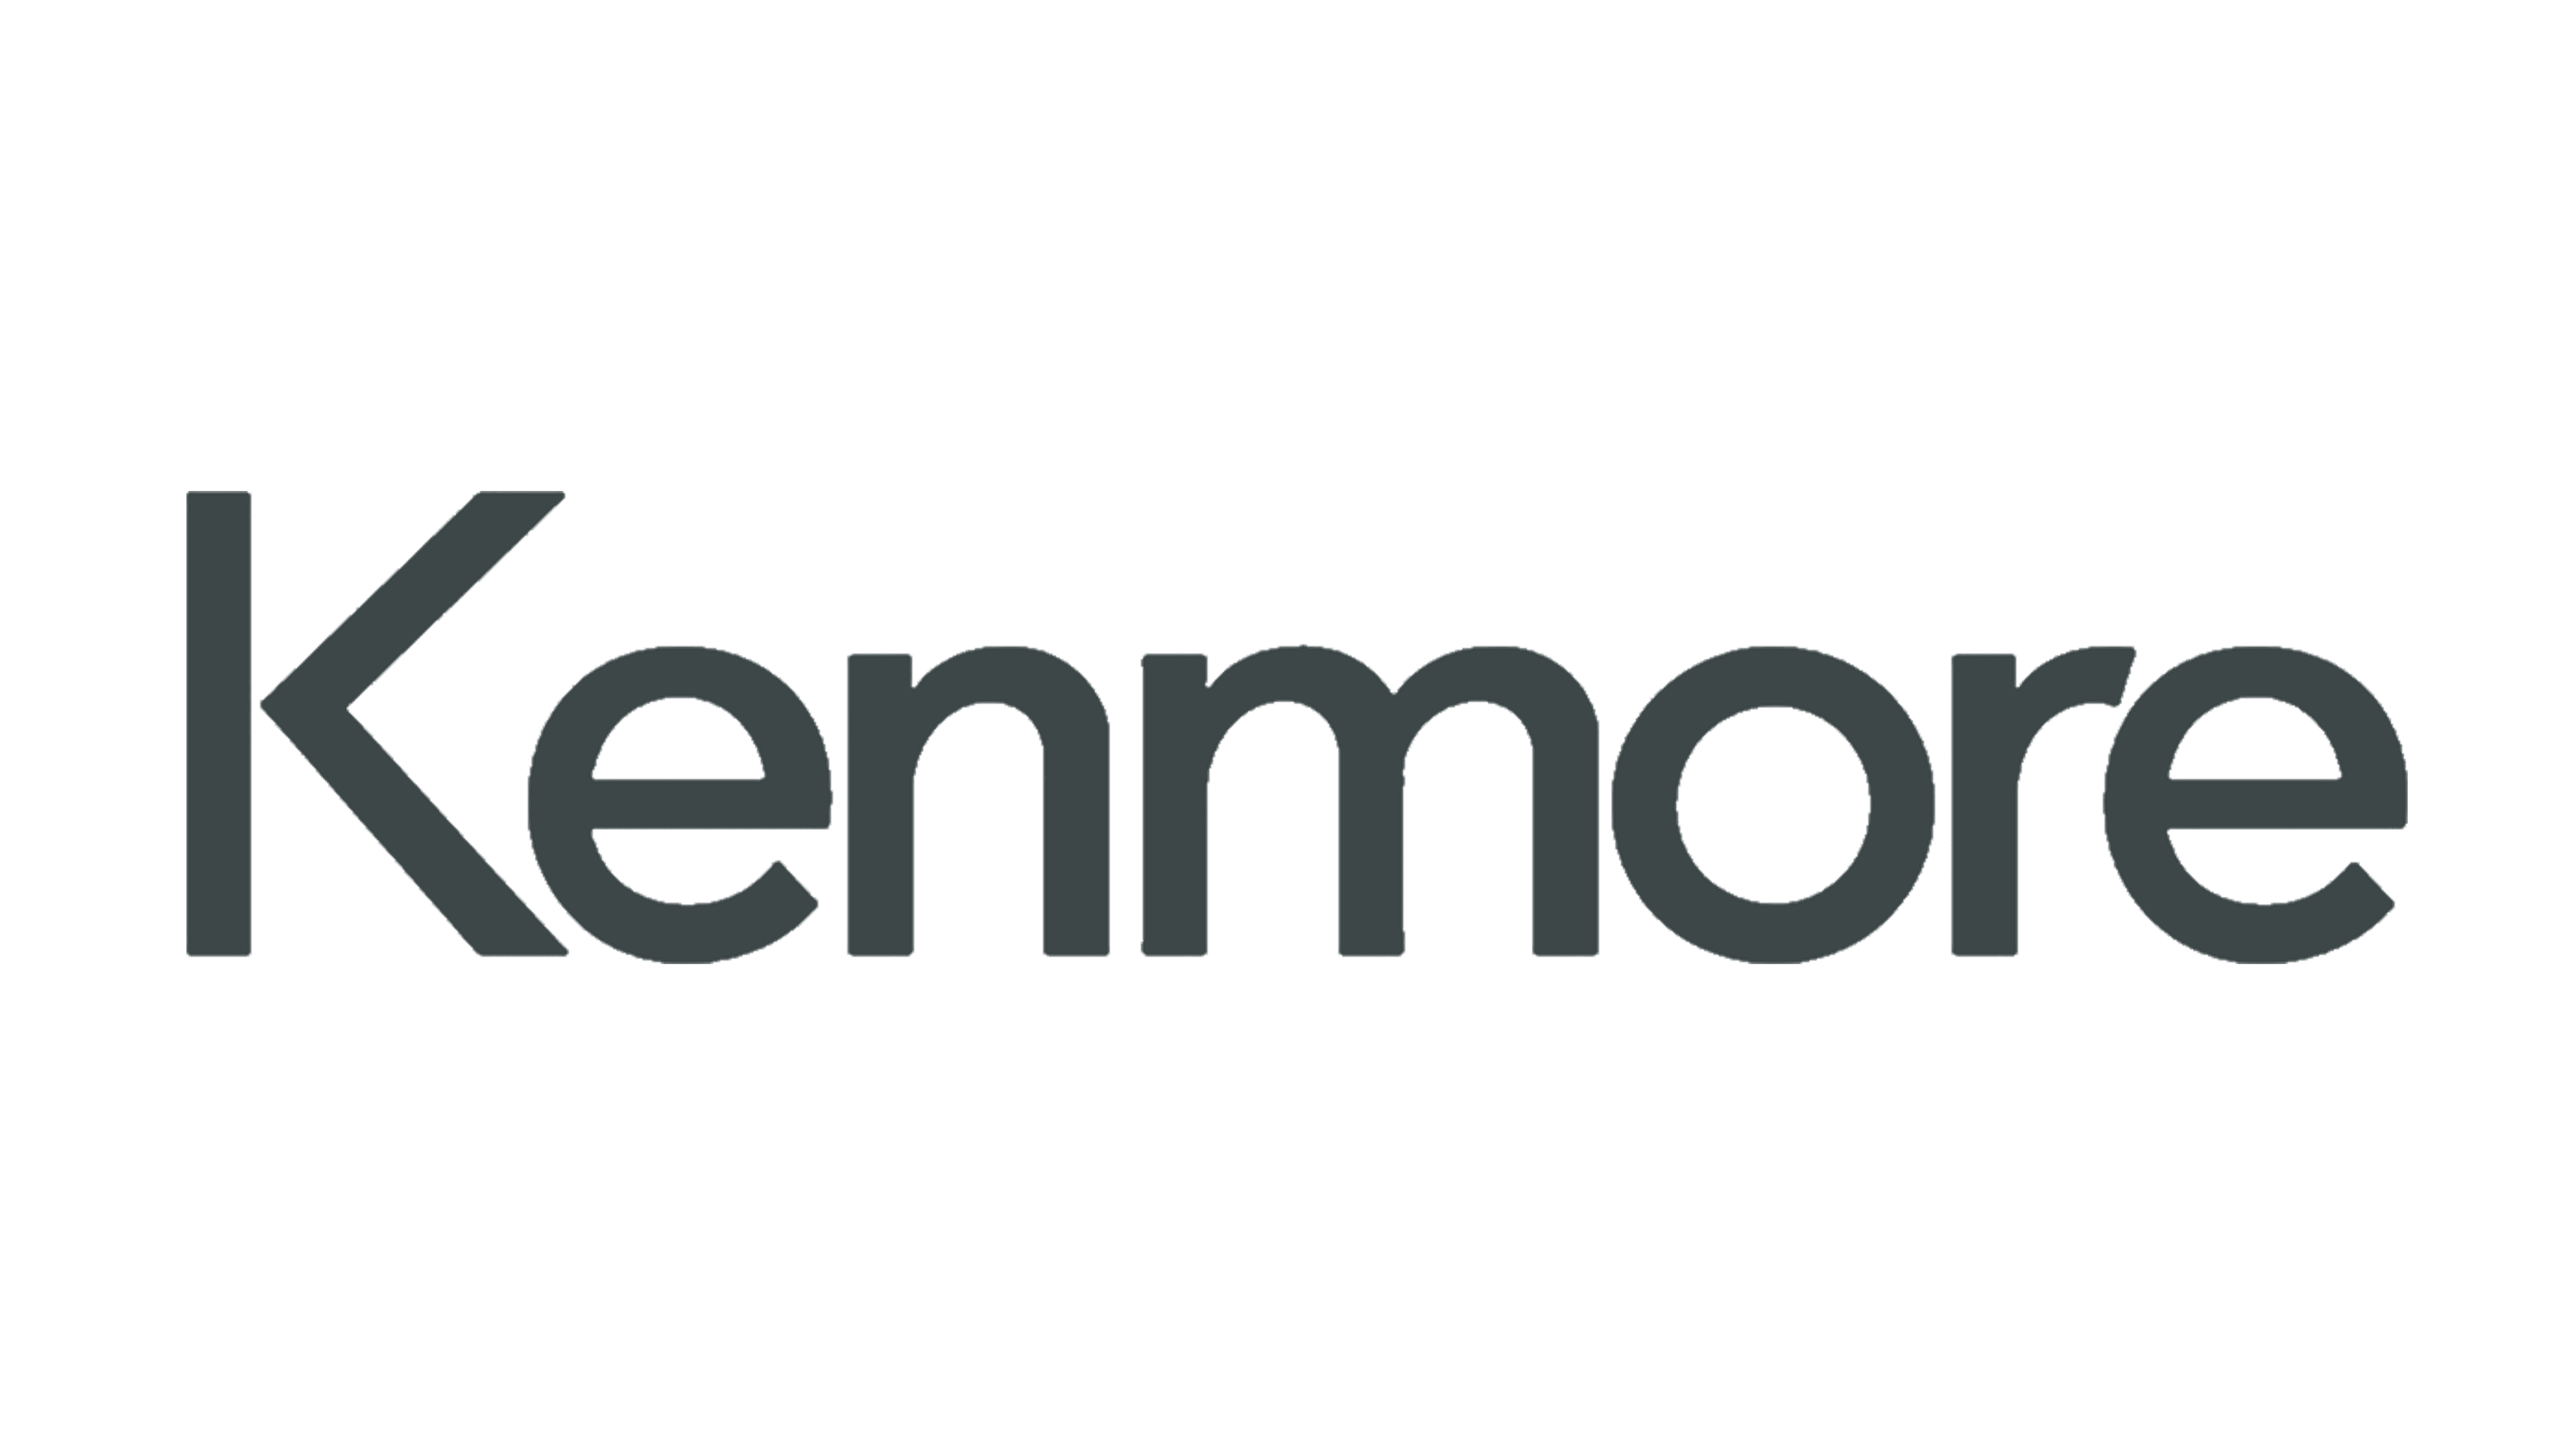 Kenmore appliance repair